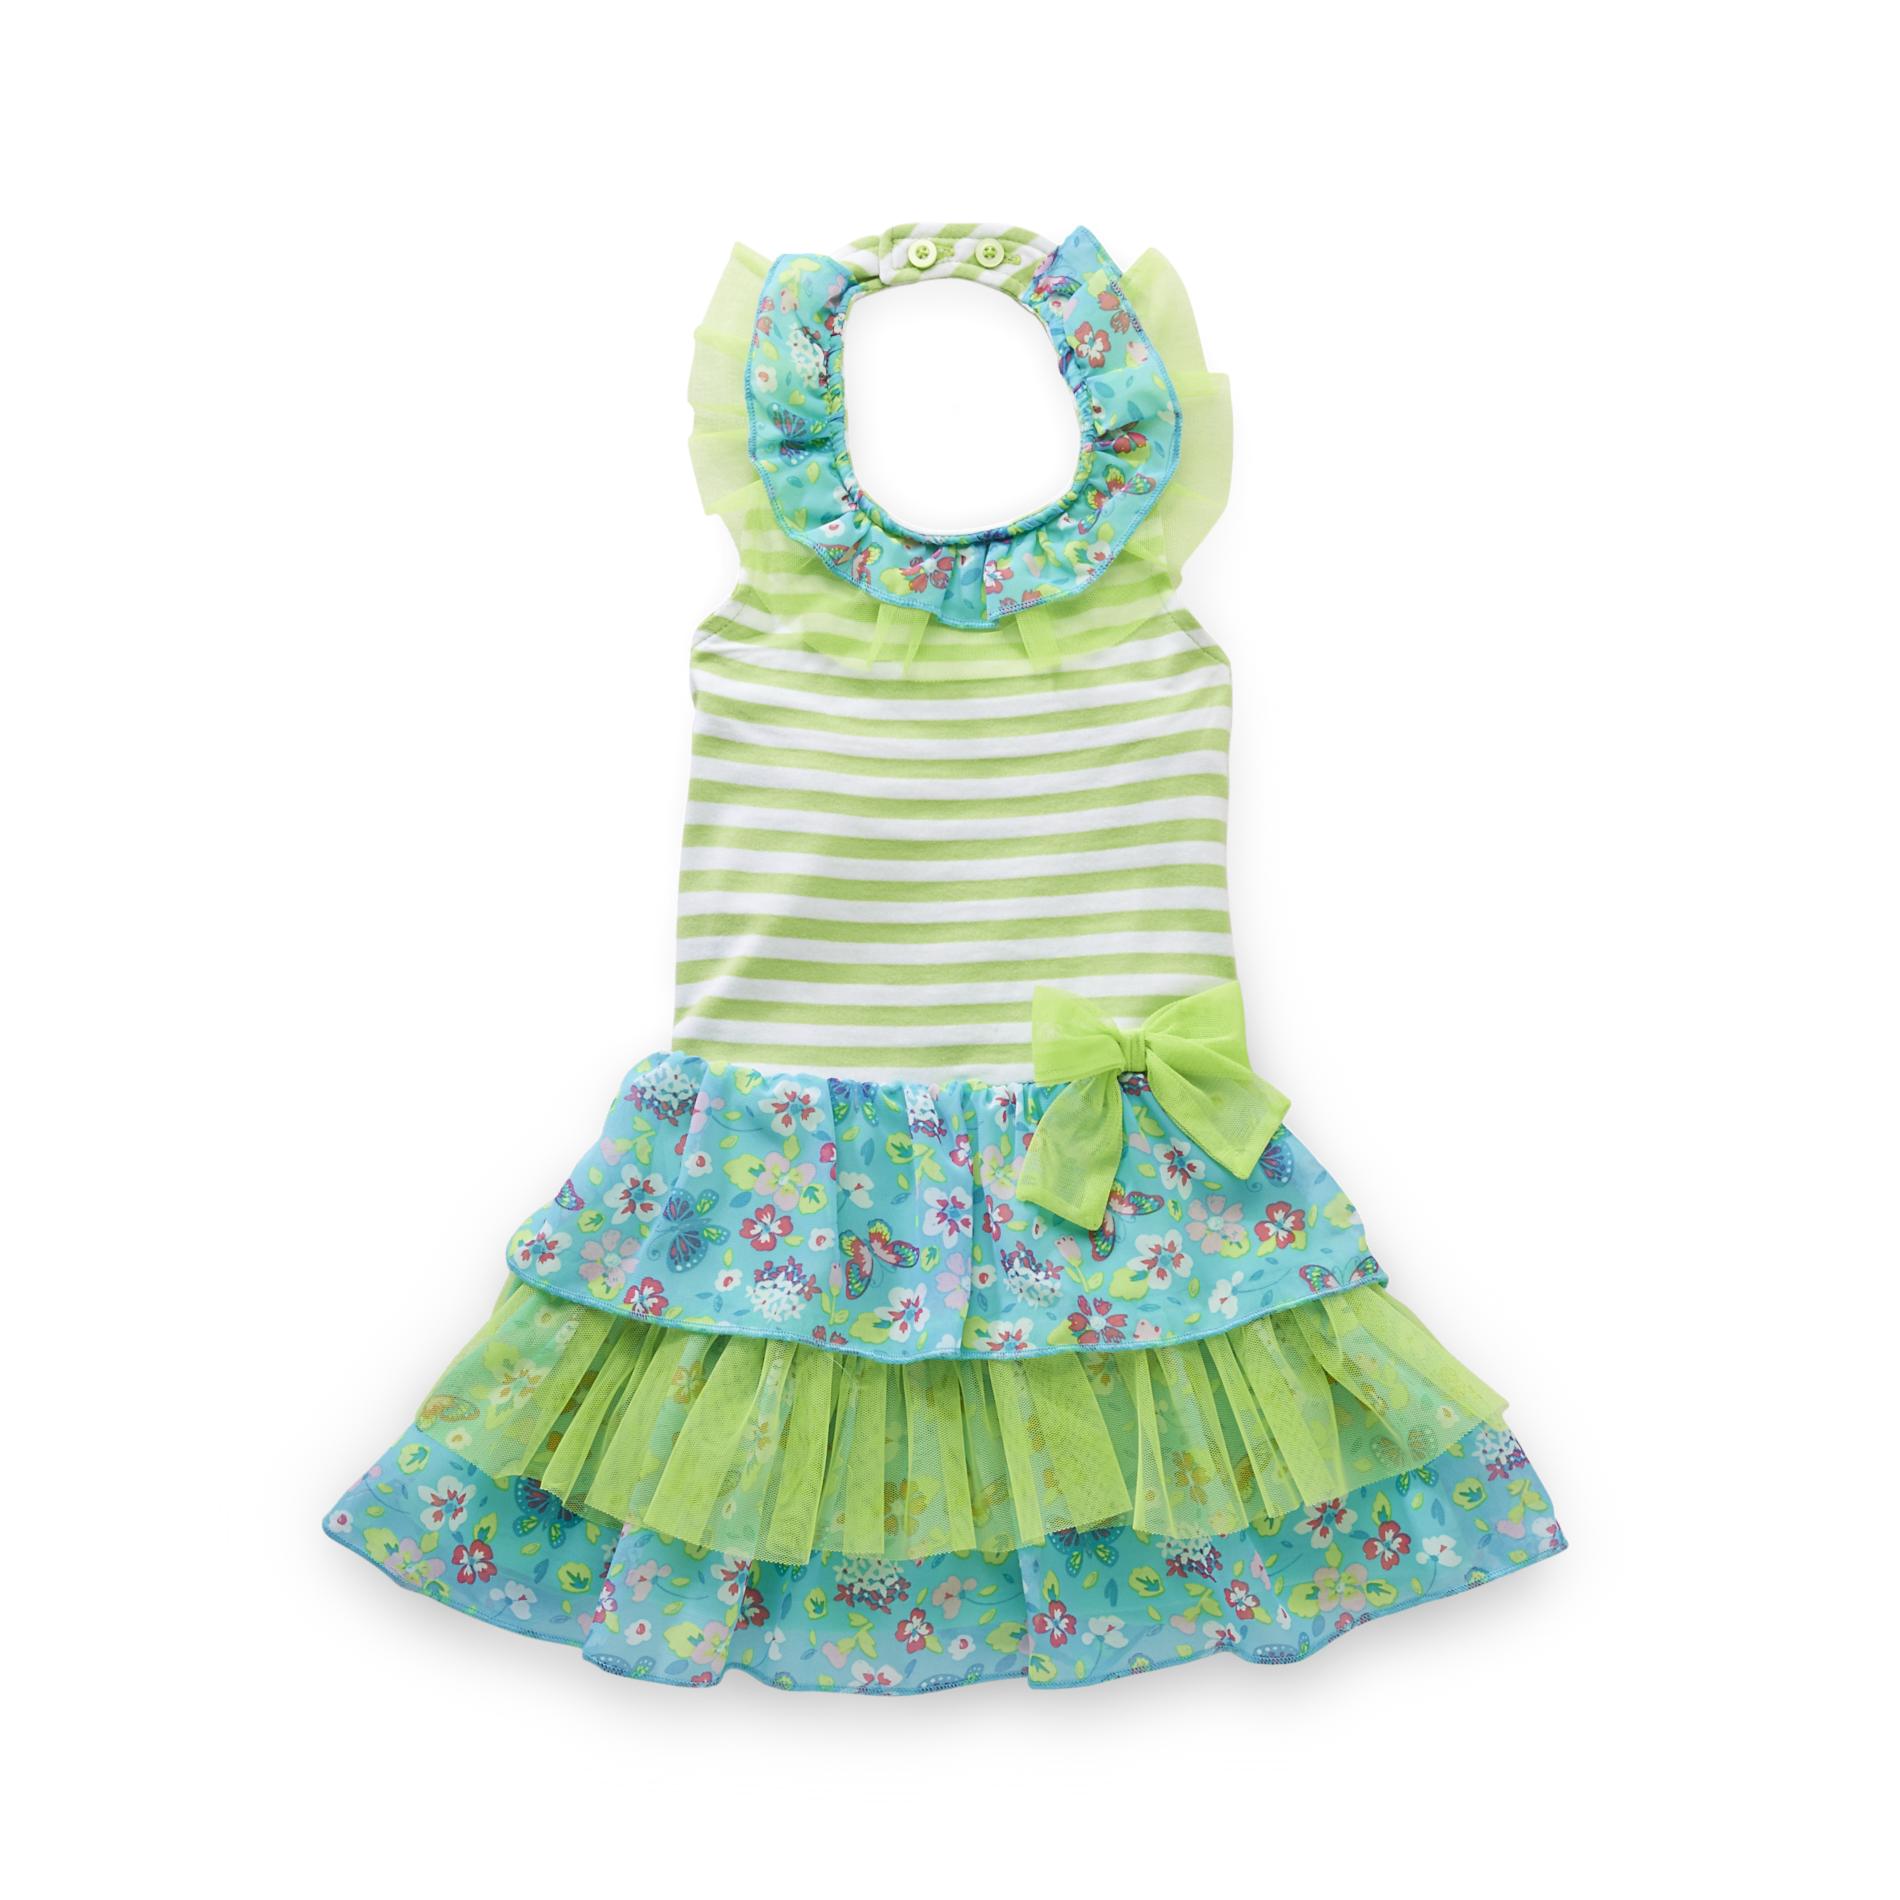 WonderKids Infant & Toddler Girl's Halter Dress - Floral & Striped